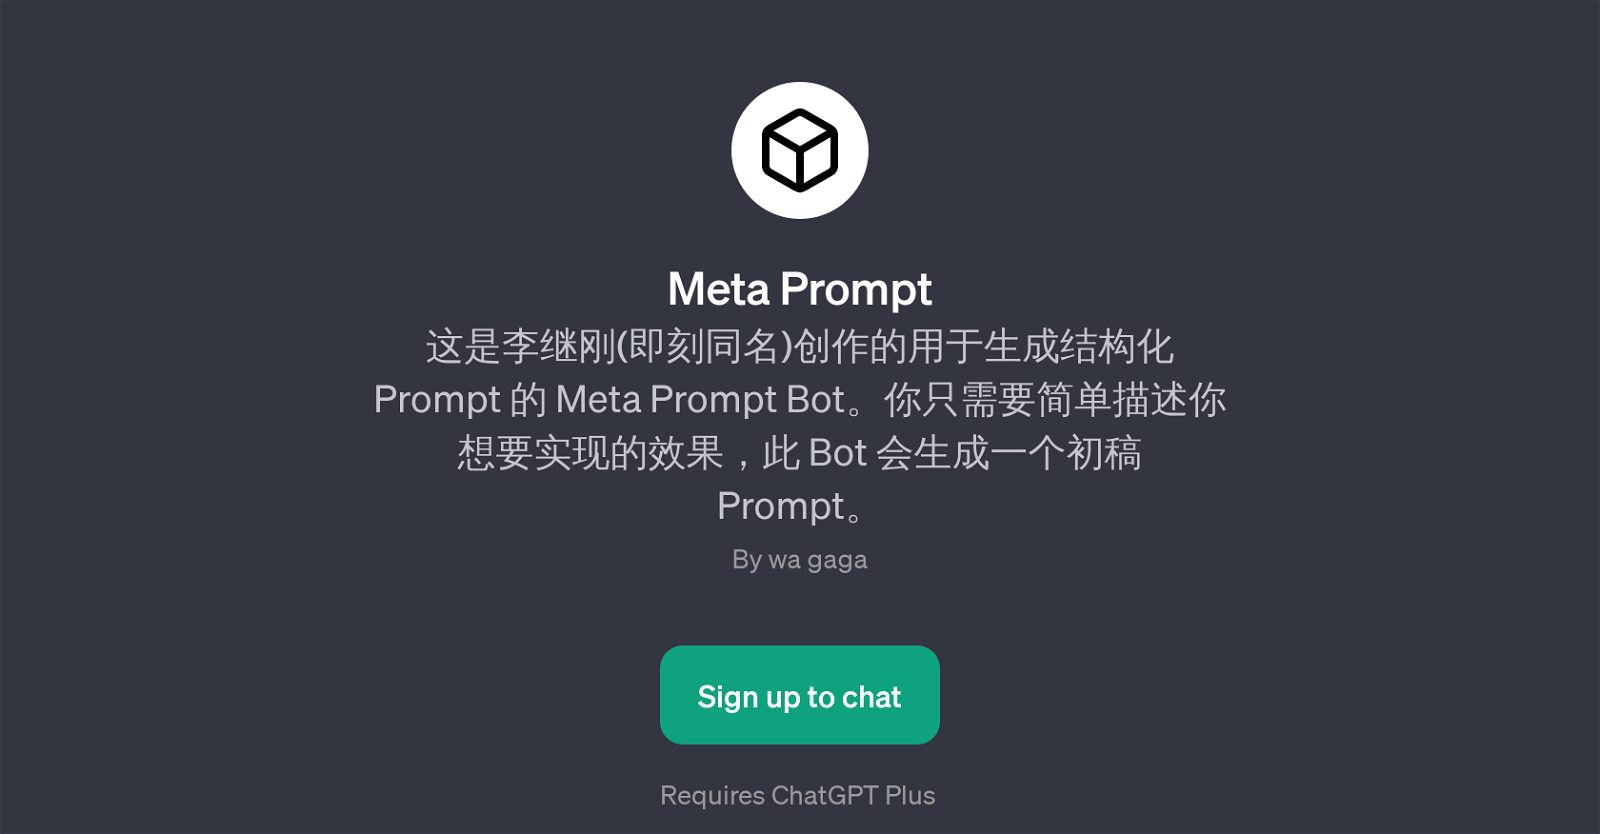 Meta Prompt website